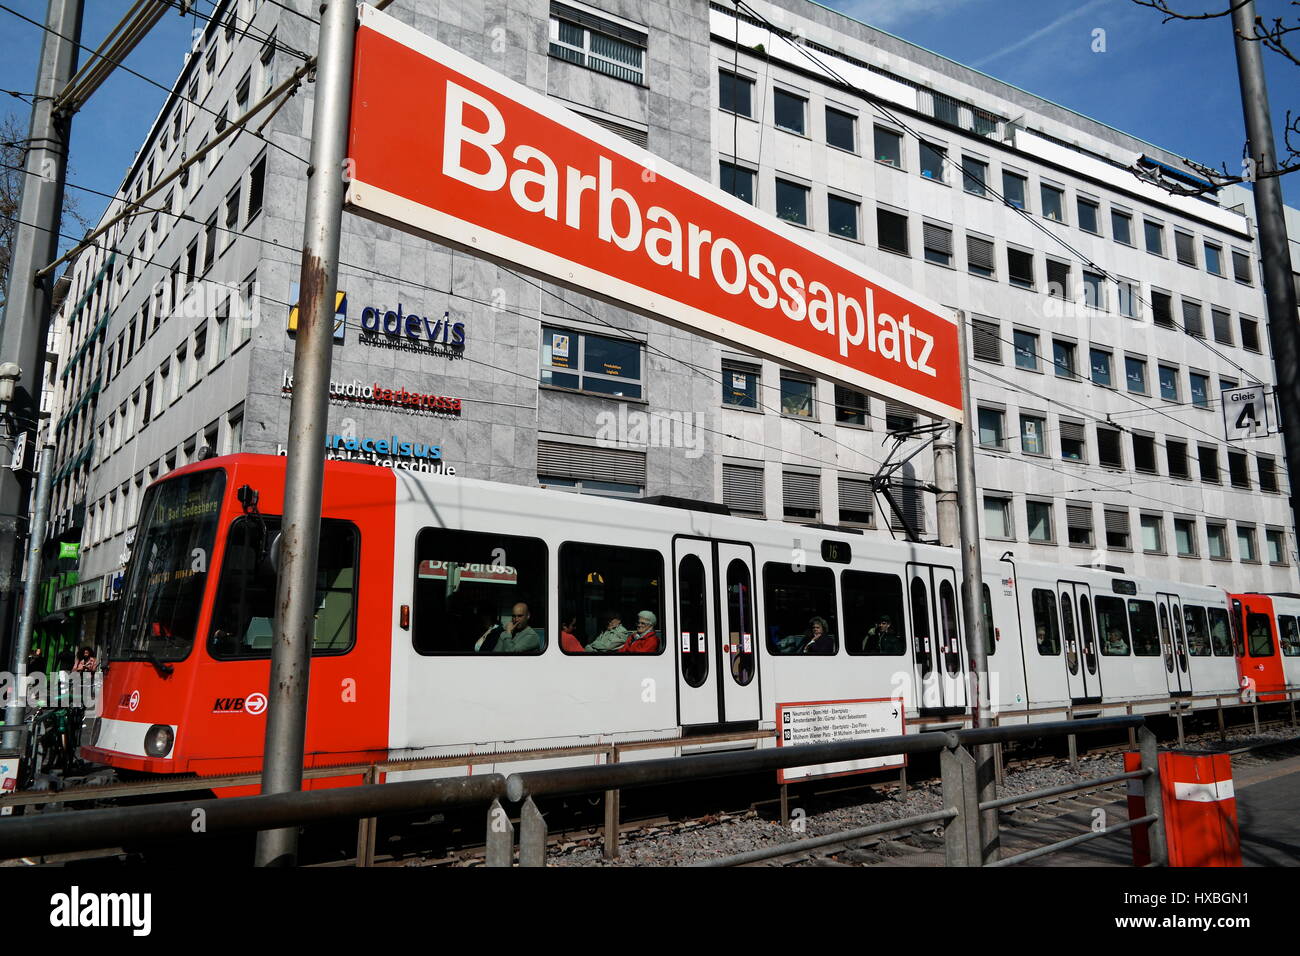 Strassenbahn an der Haltestelle Barbarossaplatz in Köln (Colonia), Nordrhein-Westfalen, Deutschland Foto Stock